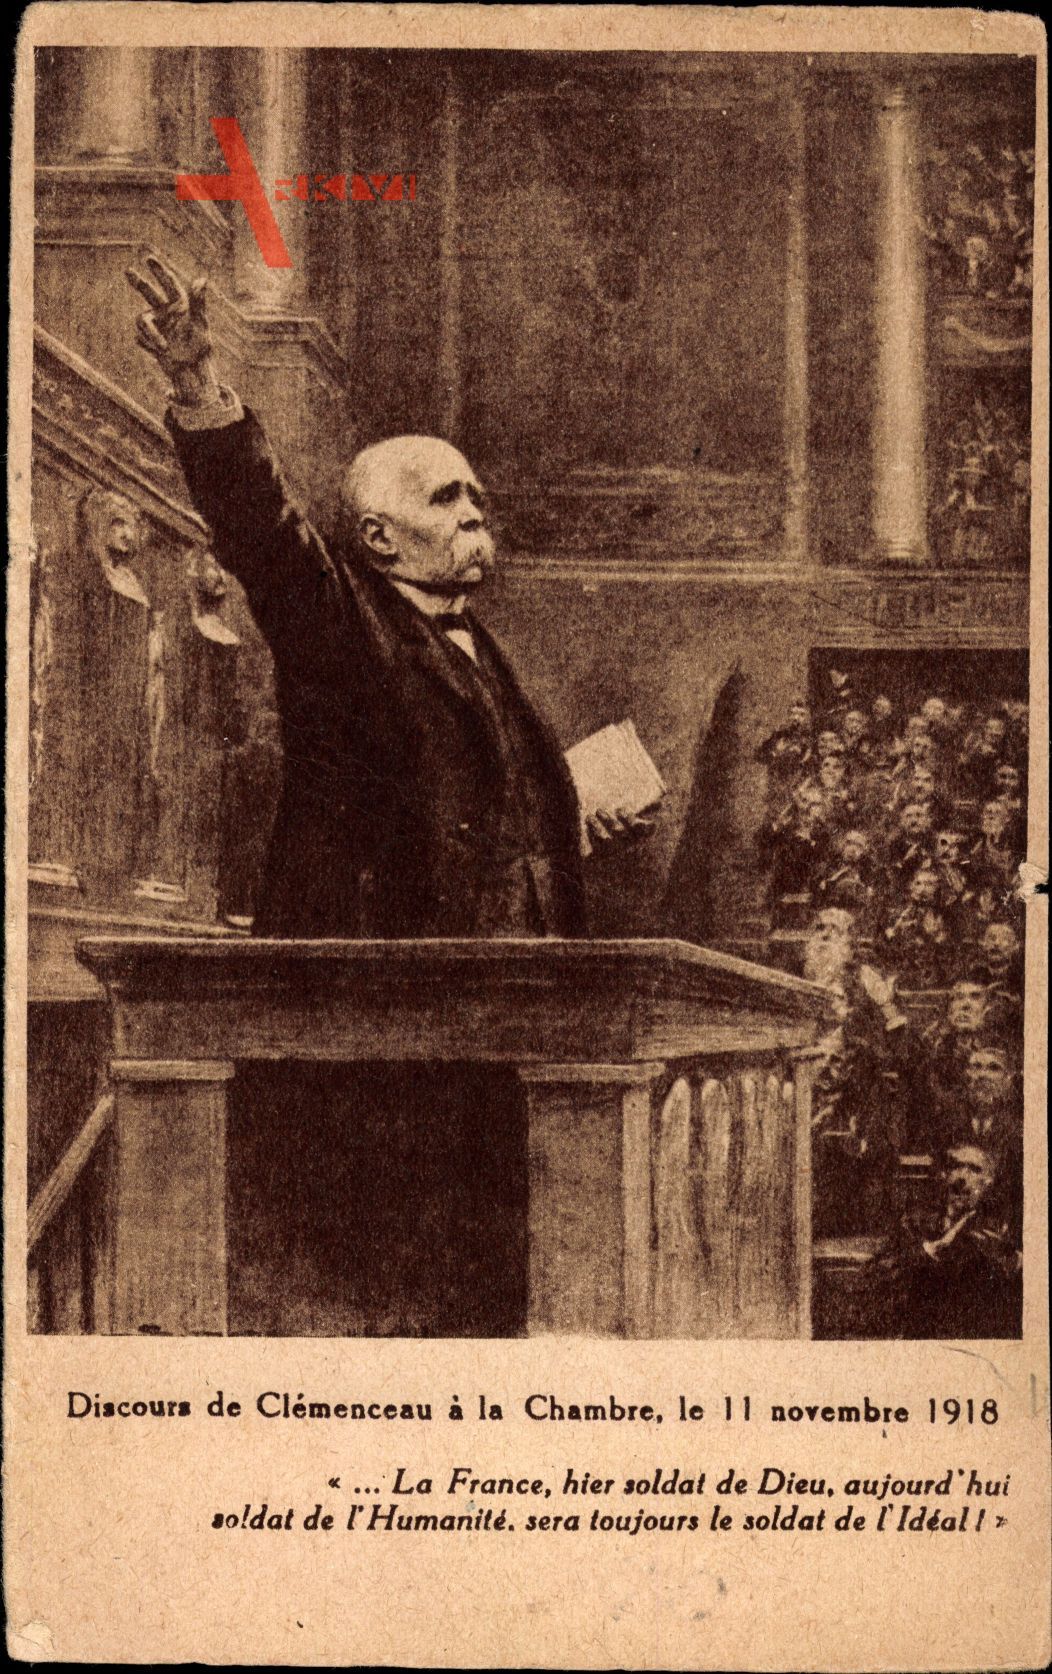 Discours de Georges Clemenceau a la Chambre, 11 Novembre 1918